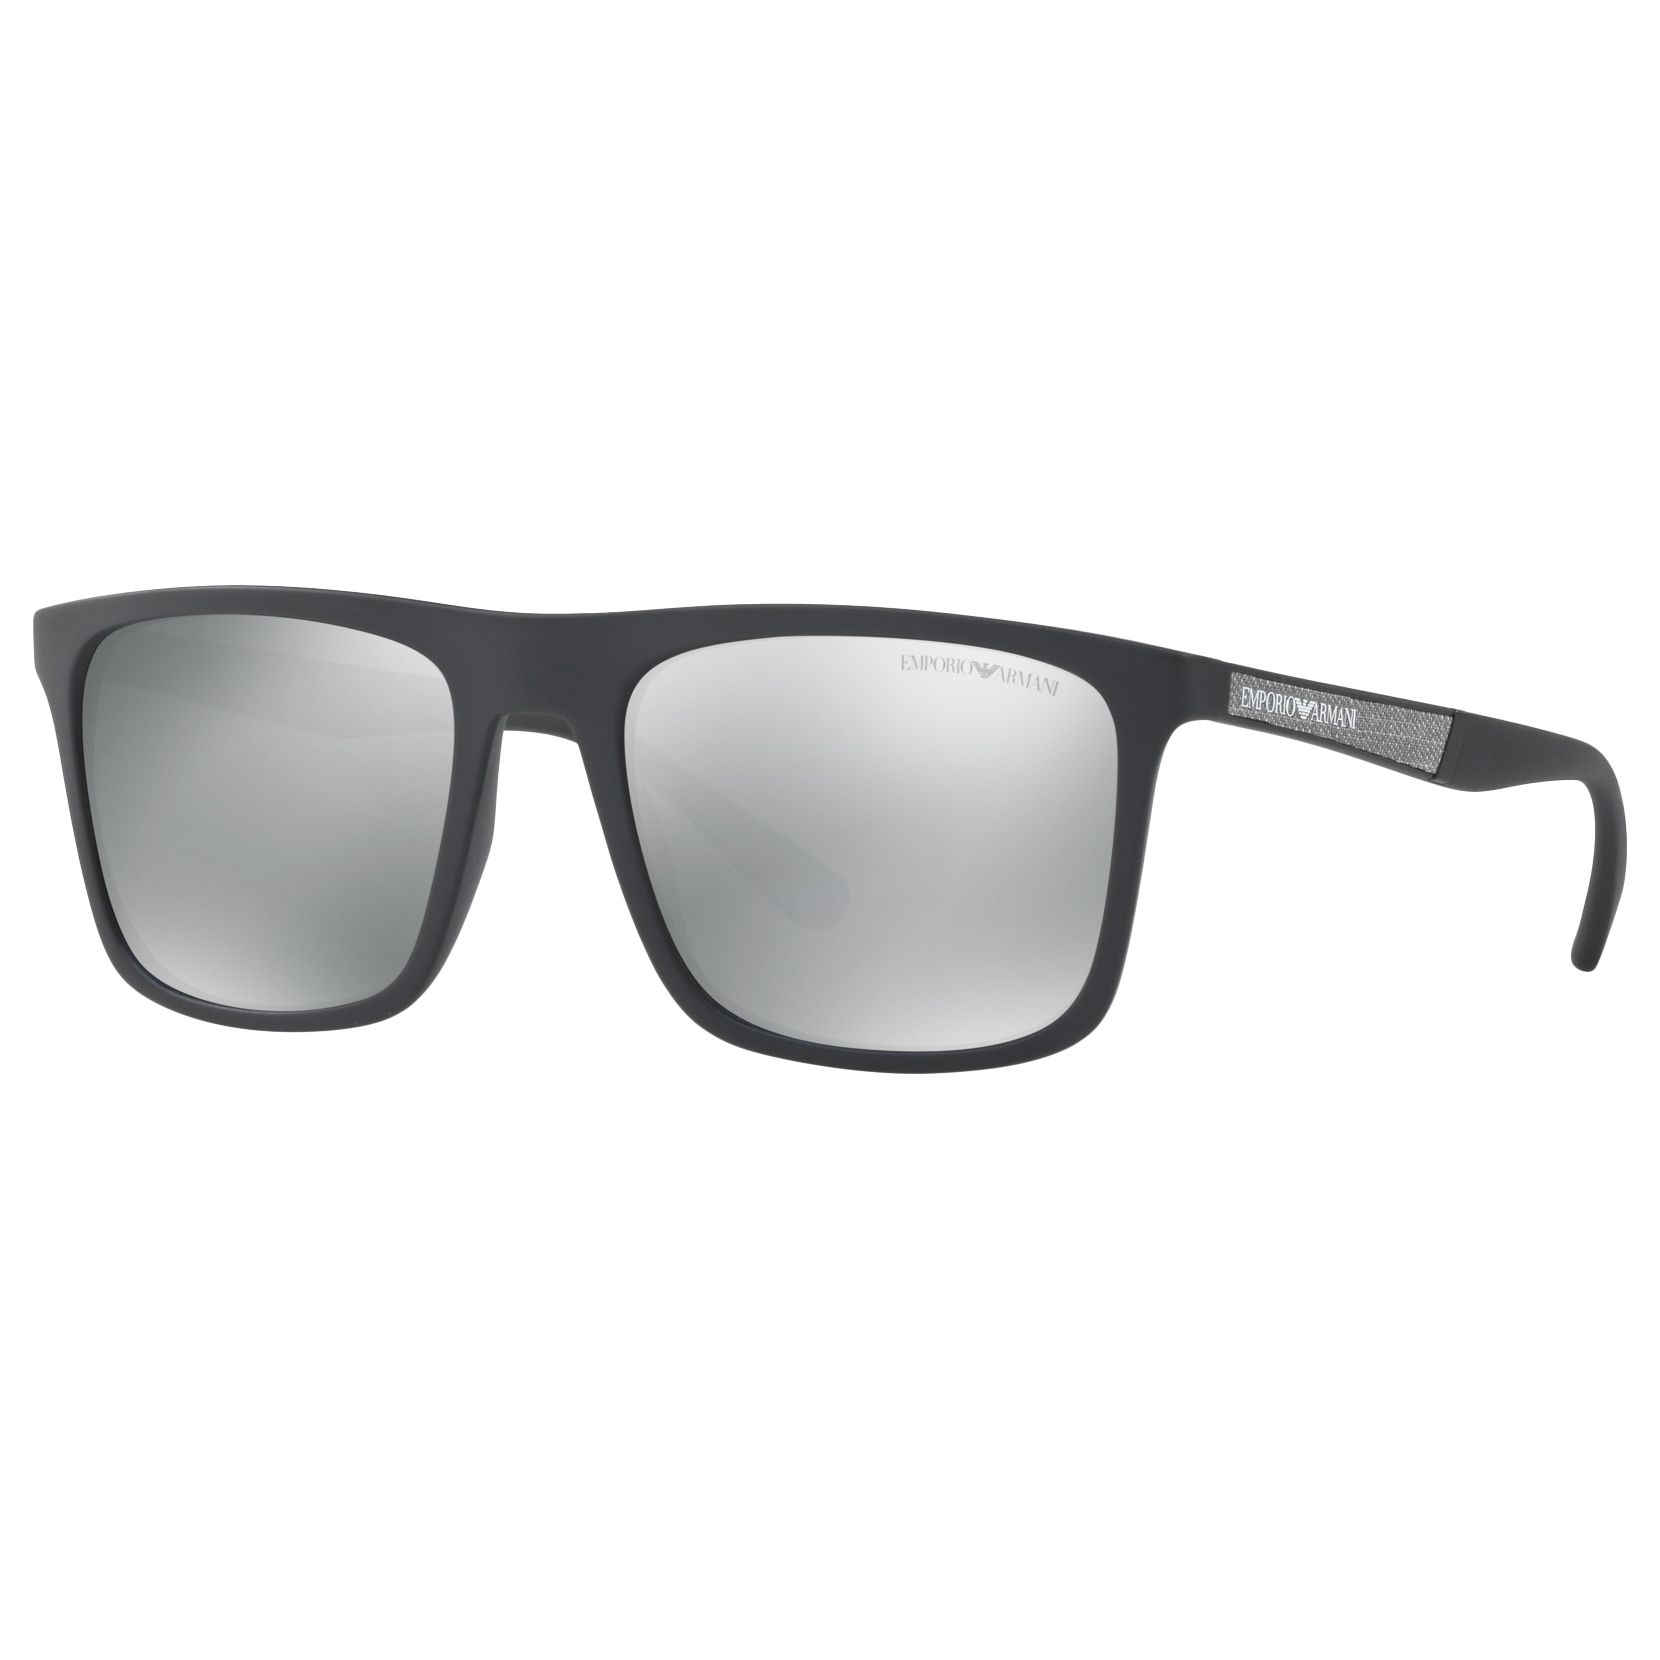 Emporio Armani EA4097 Polarised Square Sunglasses, Matte Black/Mirror ...